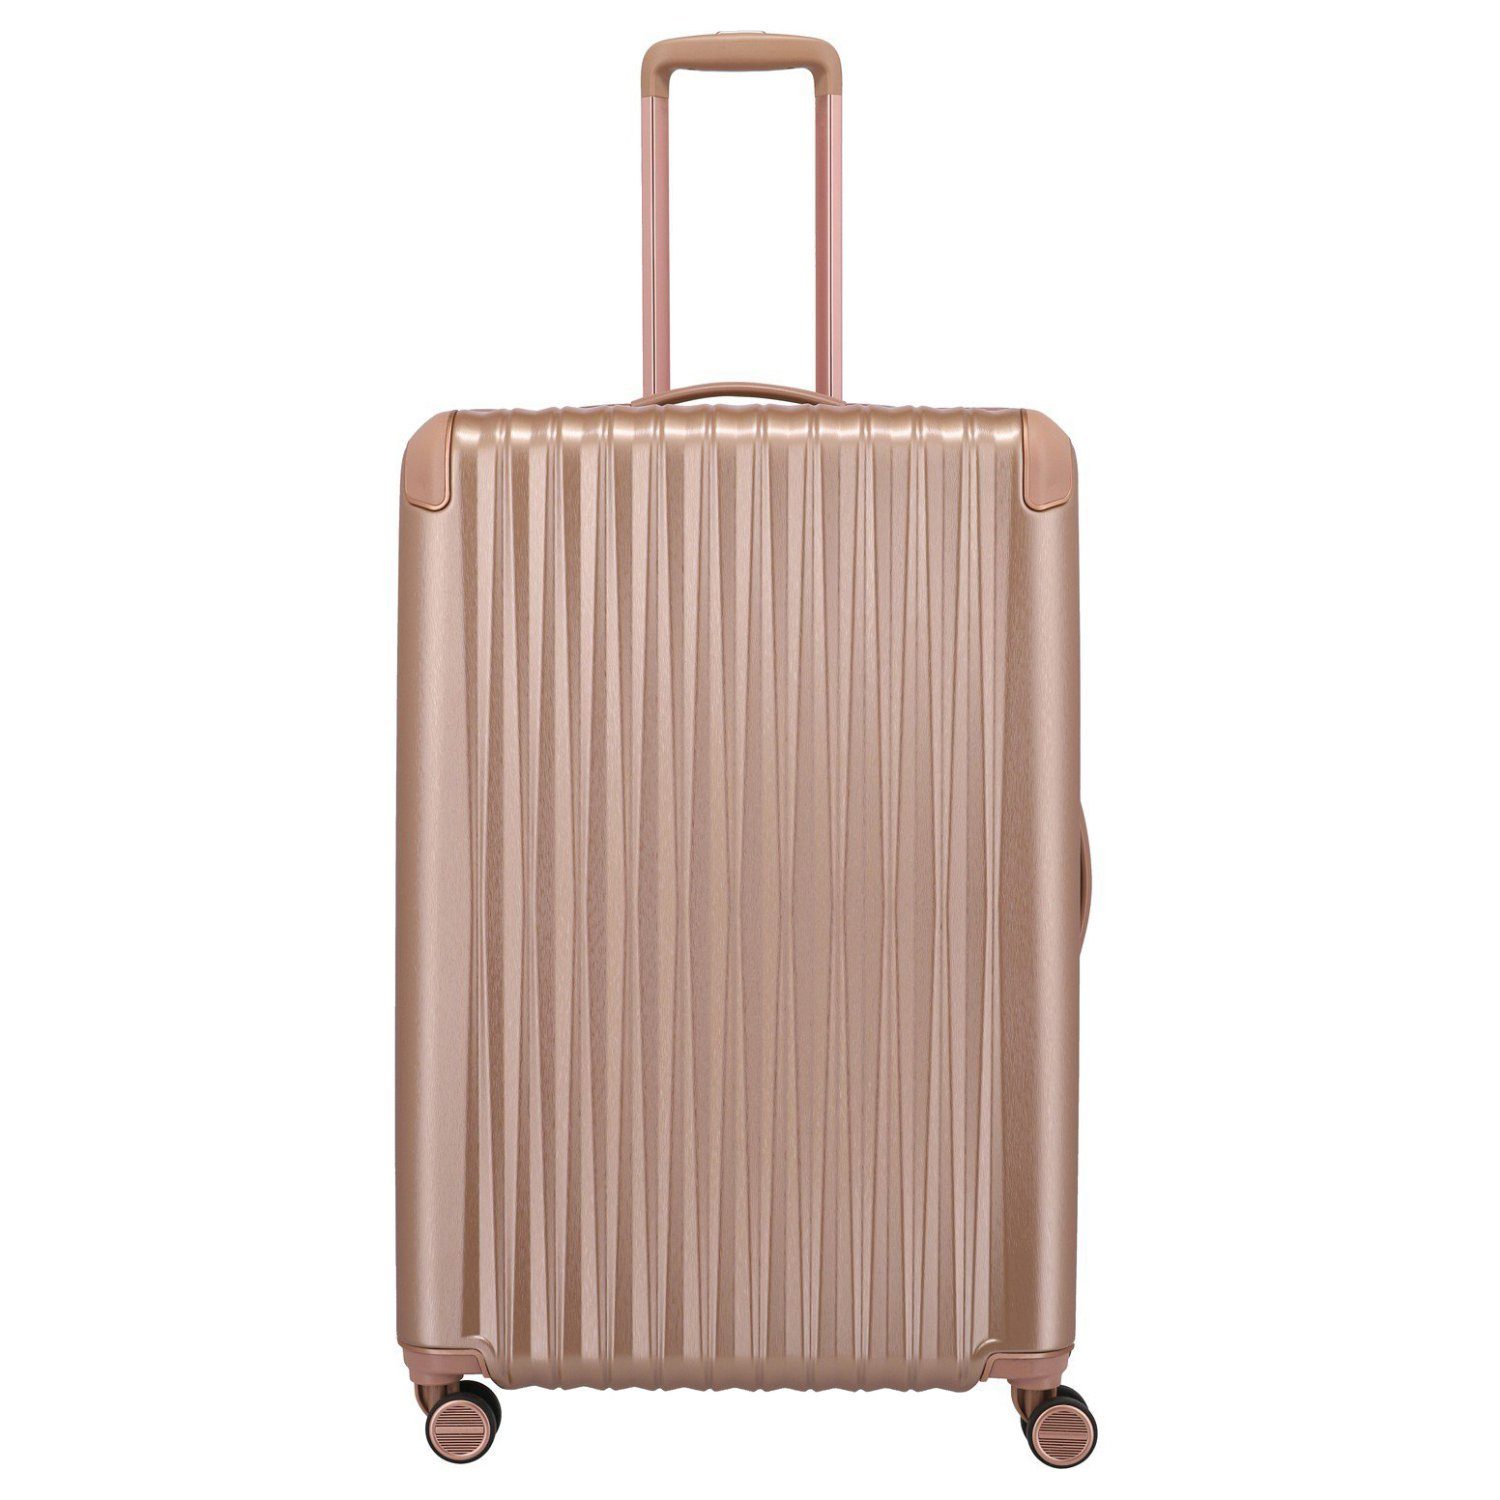 Titan Koffer & Reisegepäck online kaufen | OTTO